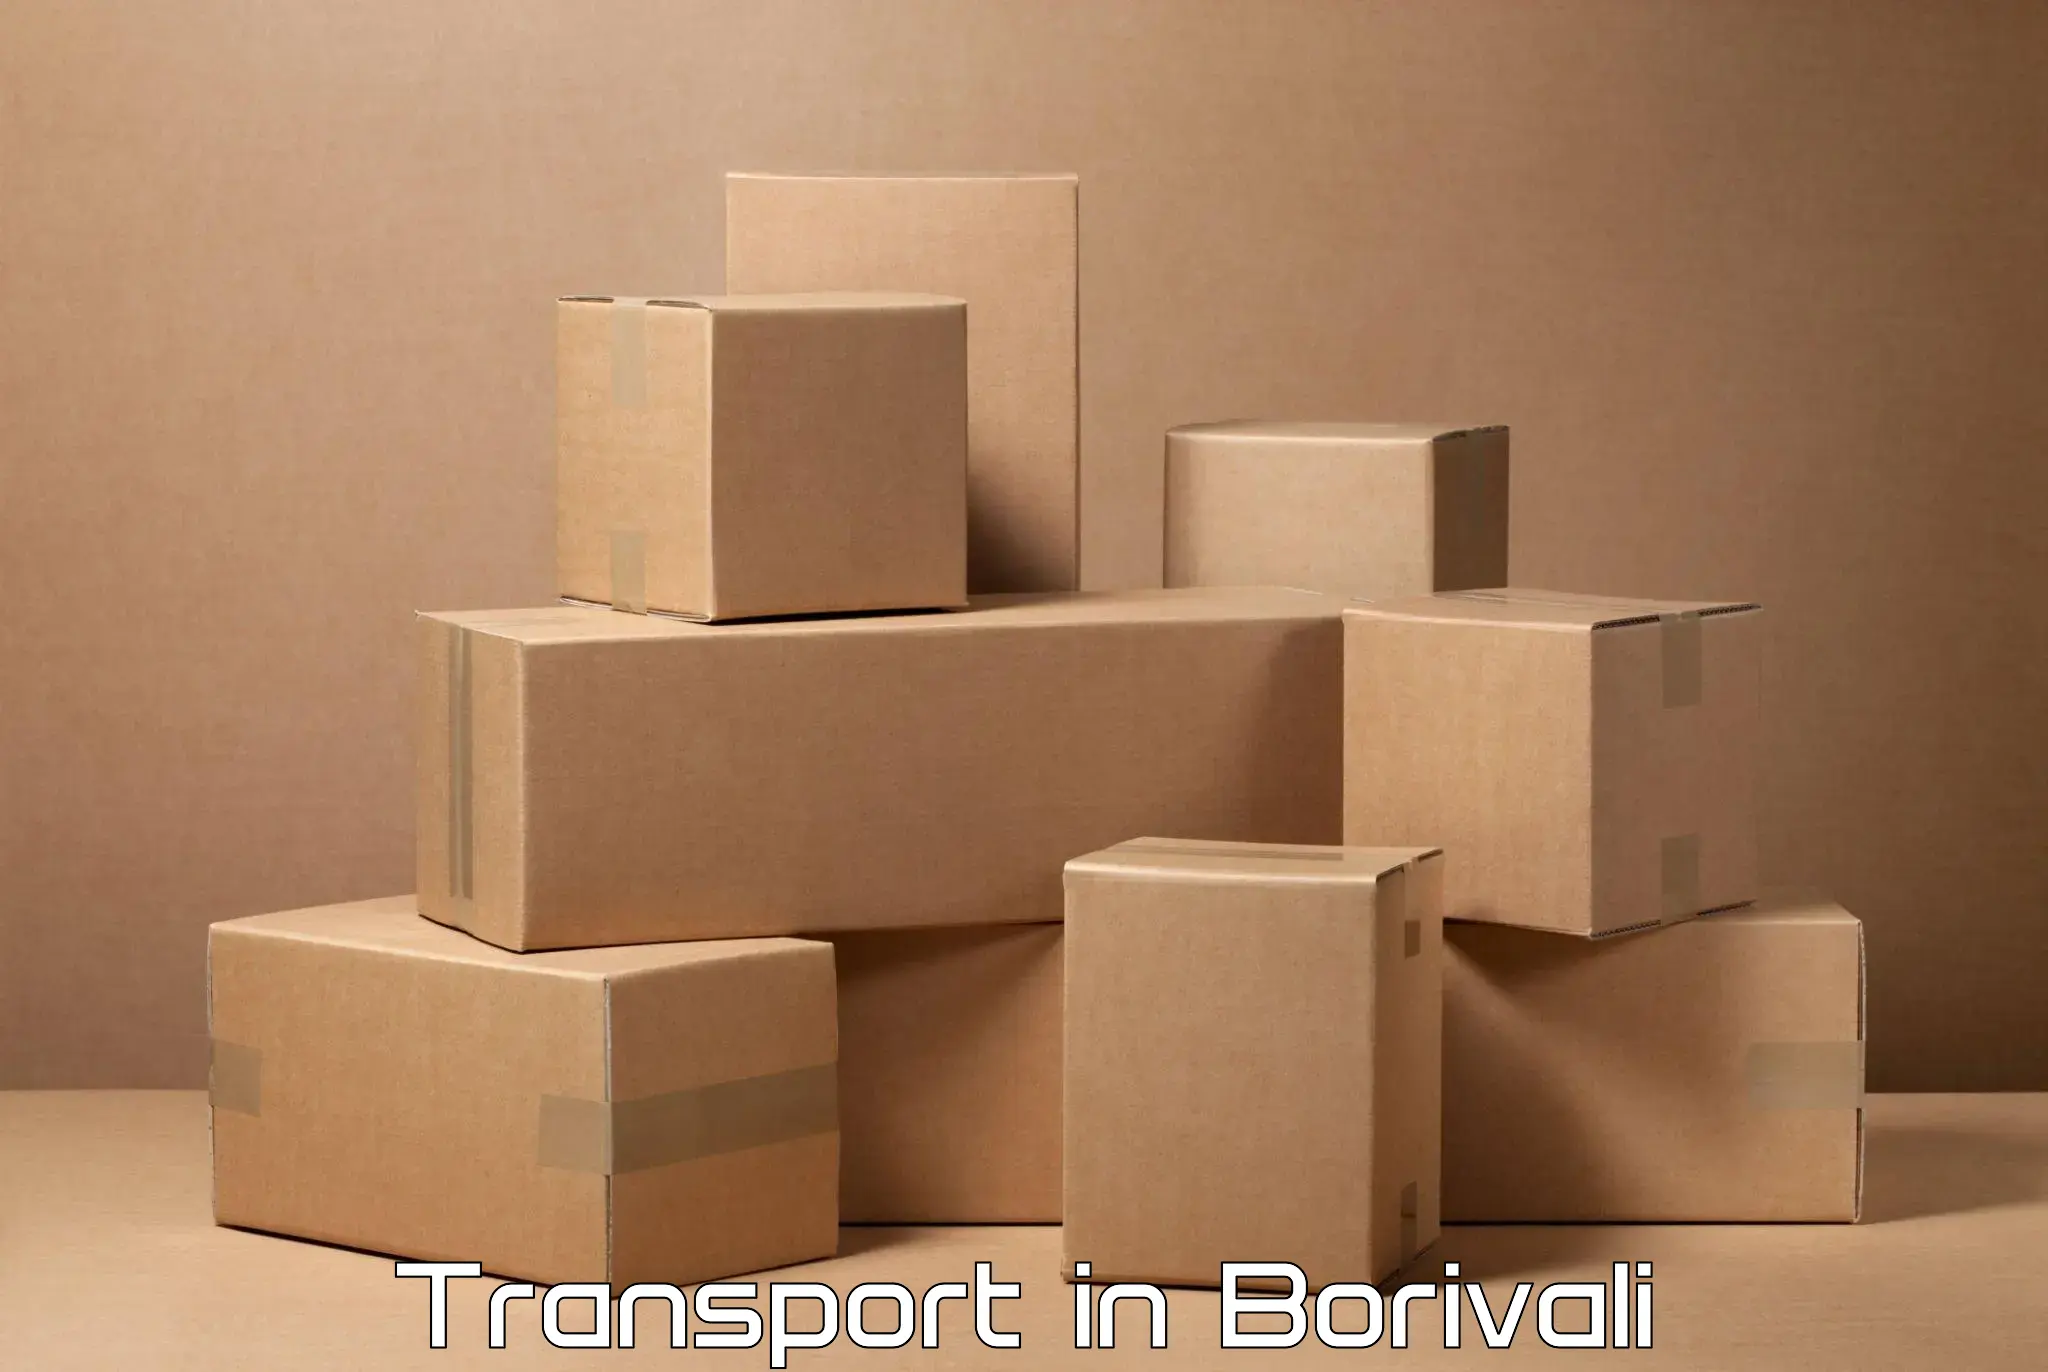 Intercity transport in Borivali